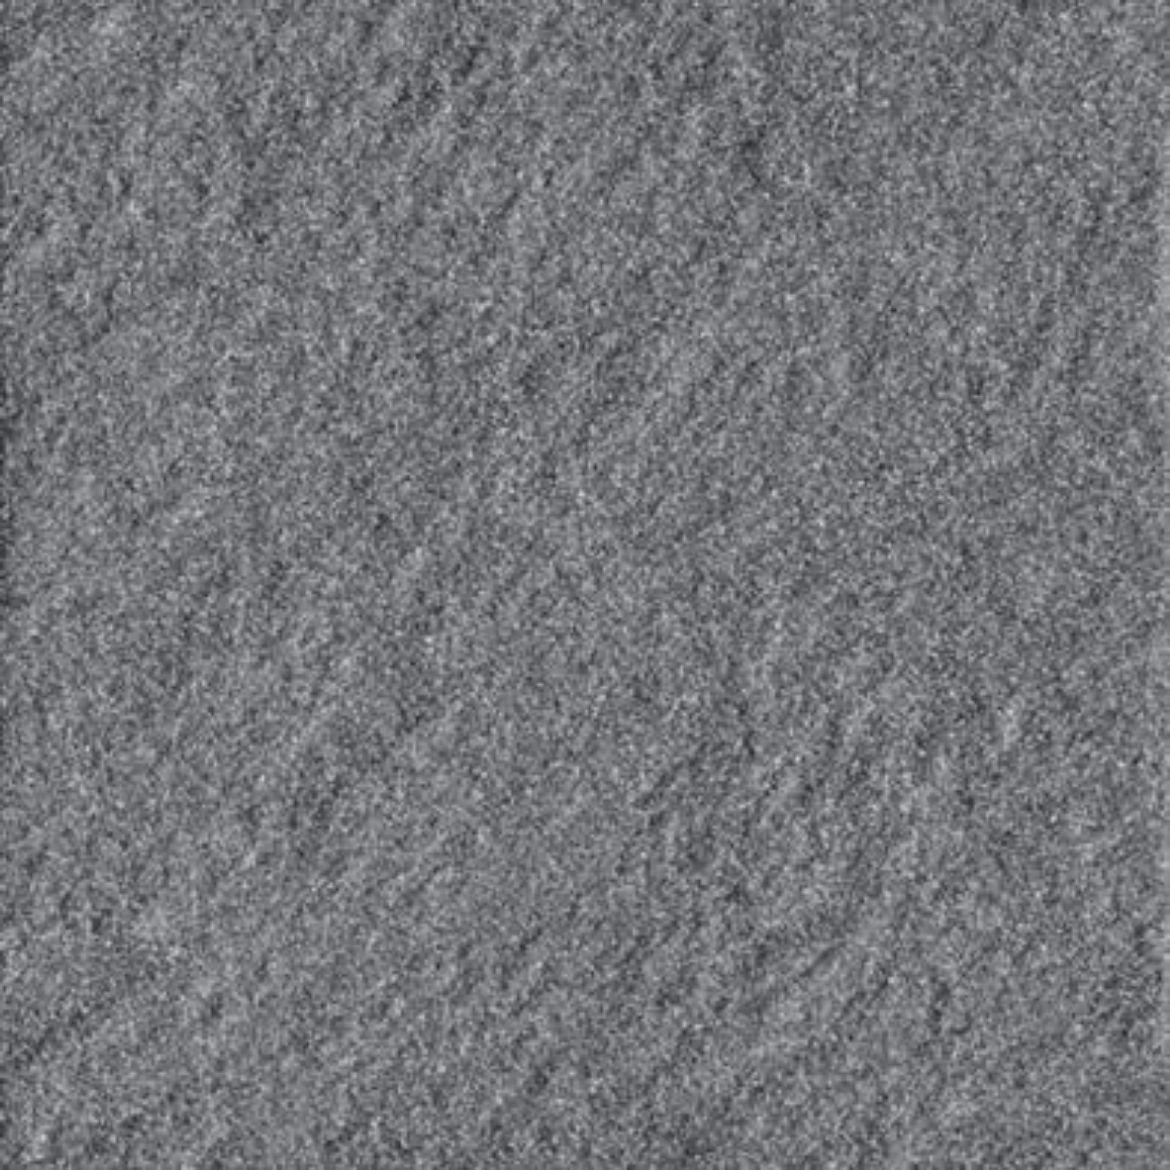 Billede af Taurus Granit Antracit  SR7 298x298 mm